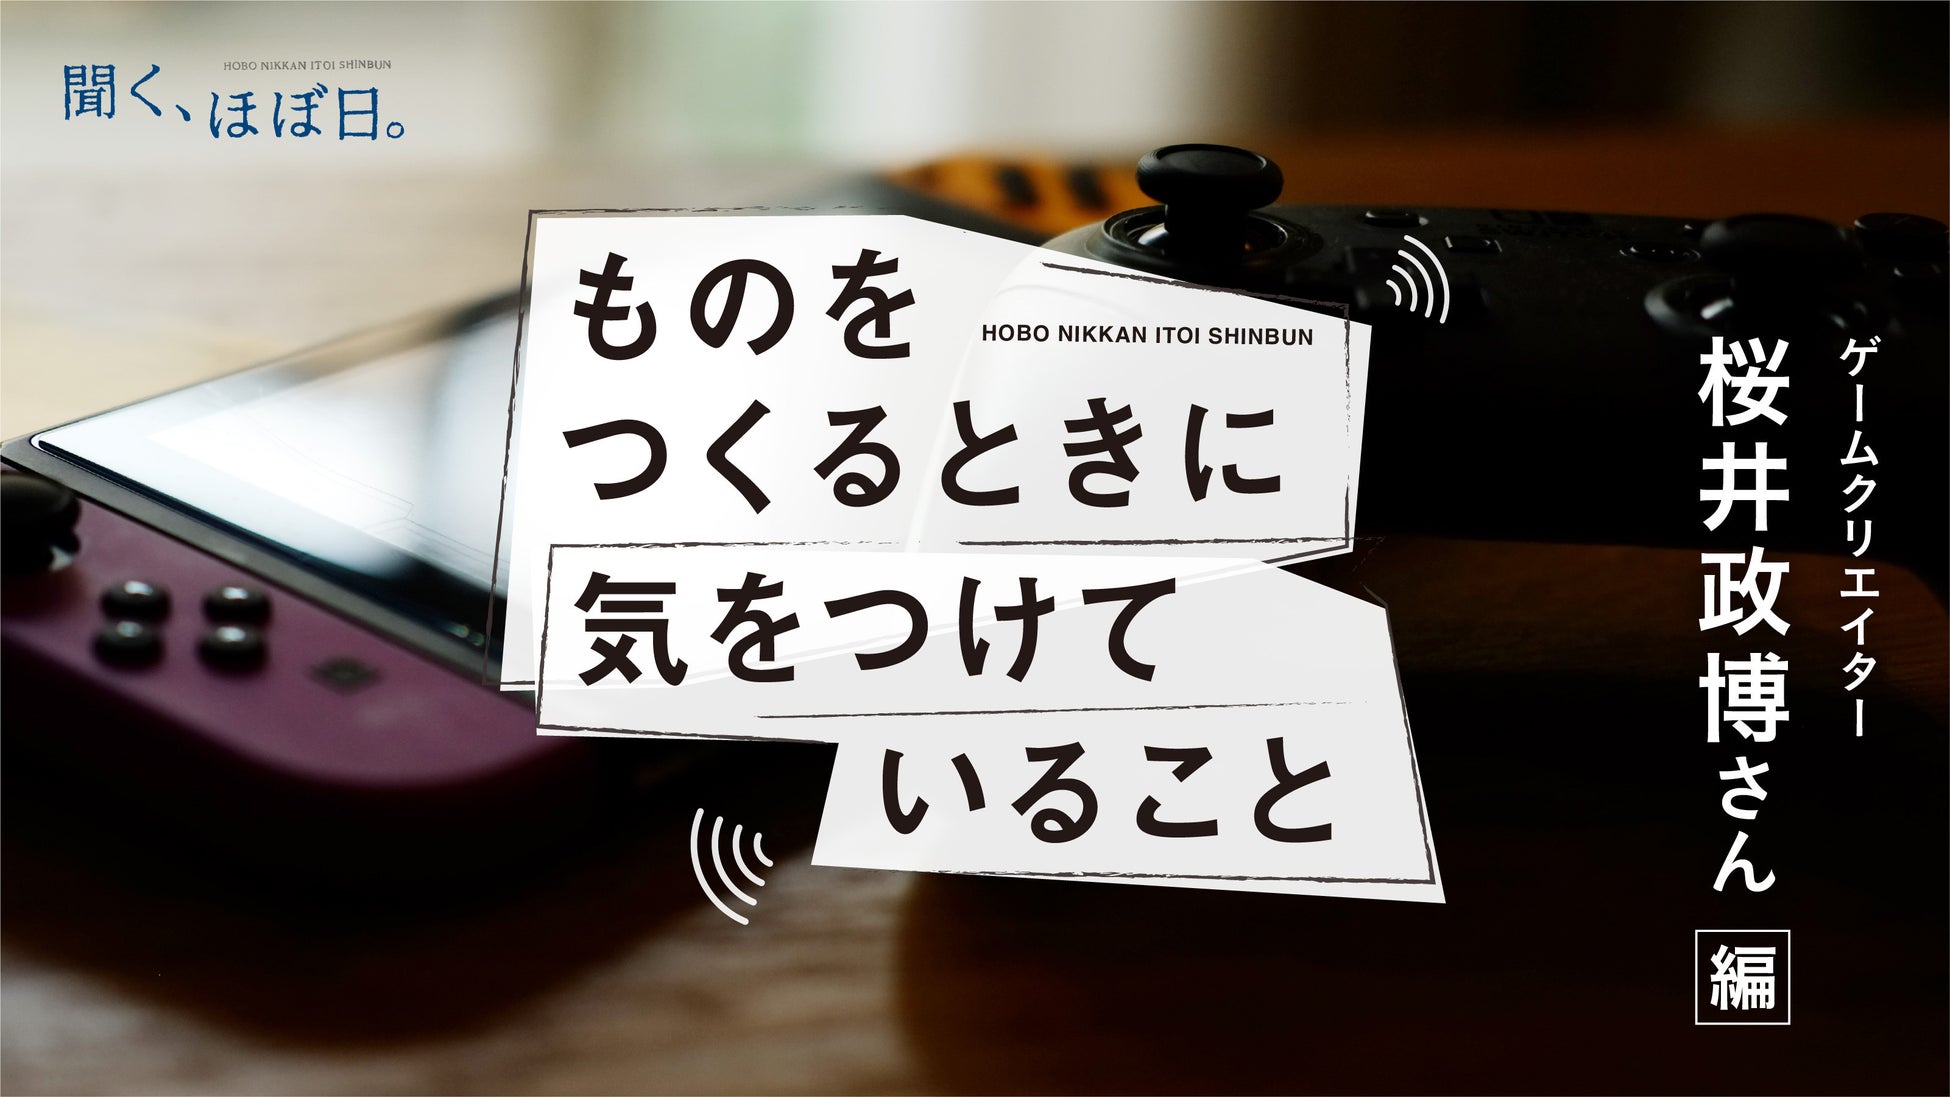 ゲームクリエイター桜井政博さんの「ものをつくるときに気をつけていること」ポッドキャストなどで配信。